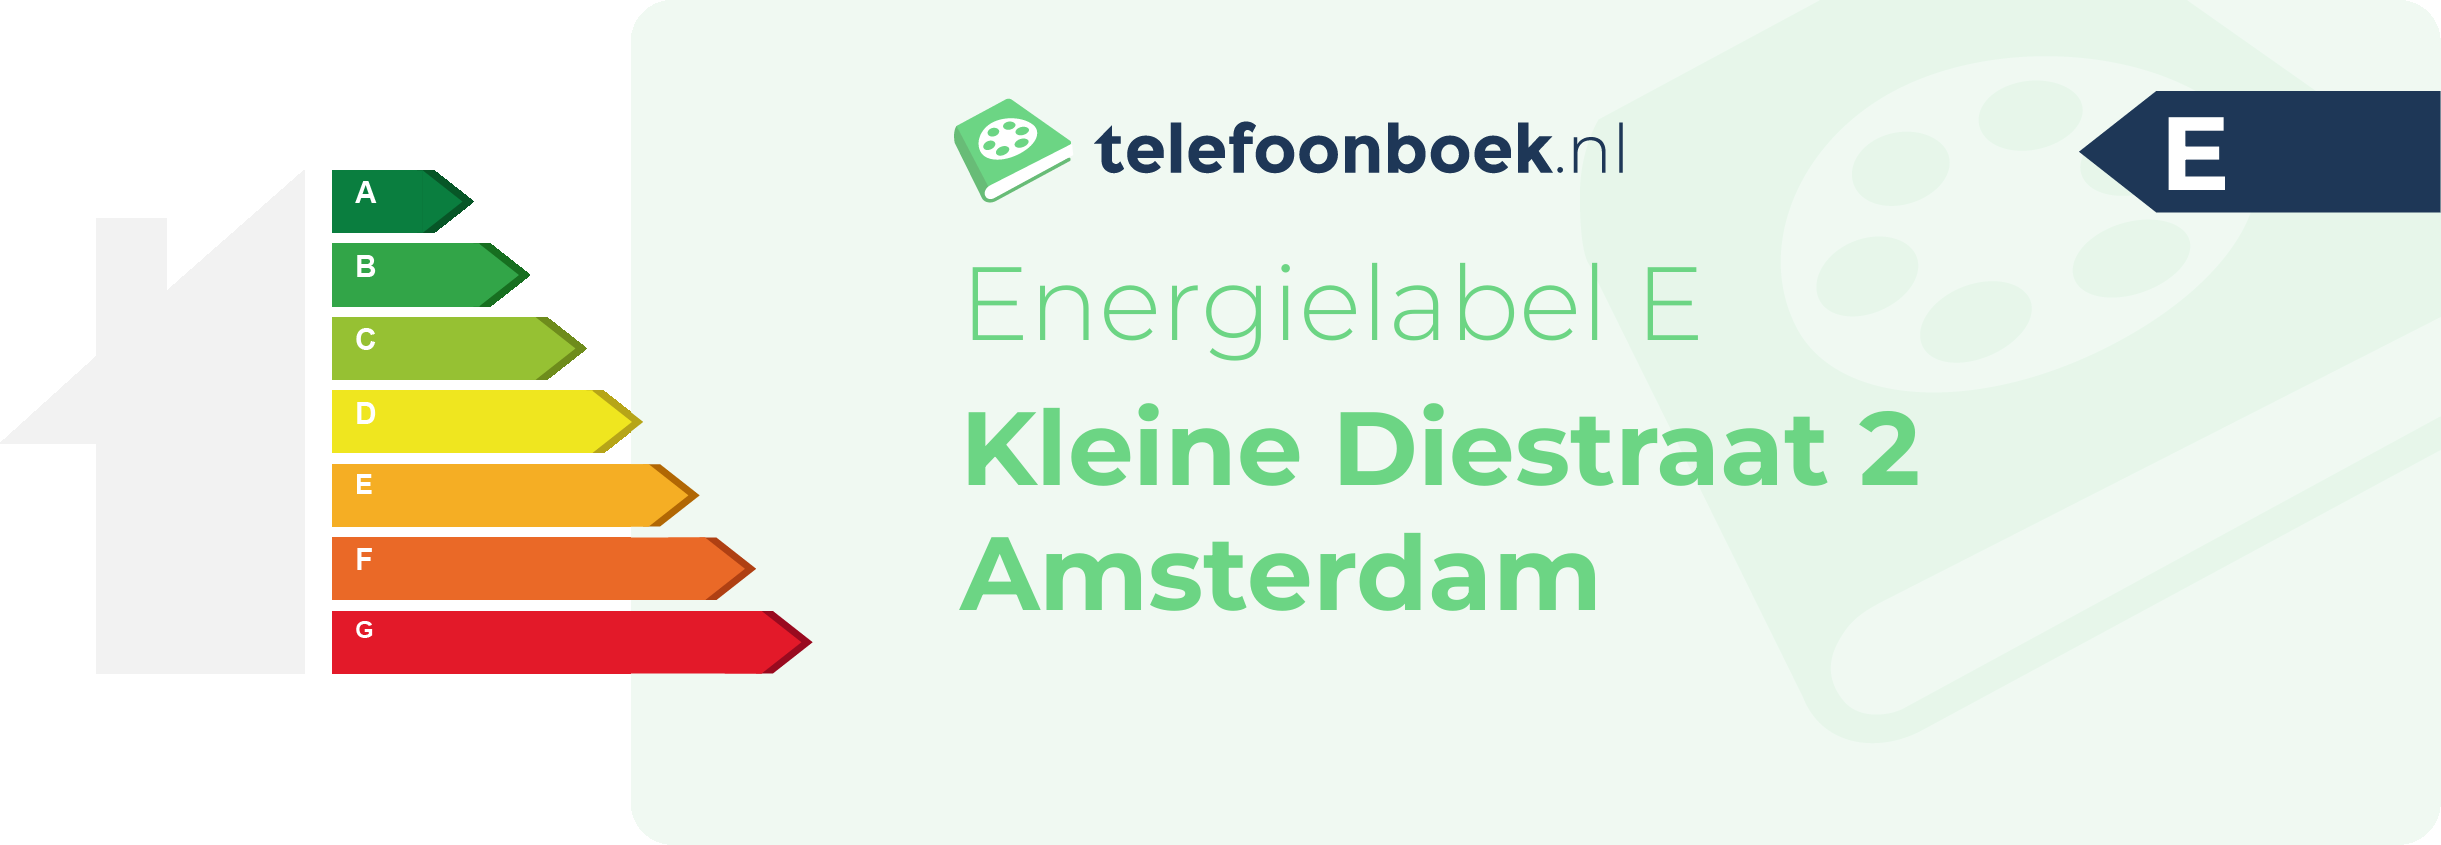 Energielabel Kleine Diestraat 2 Amsterdam